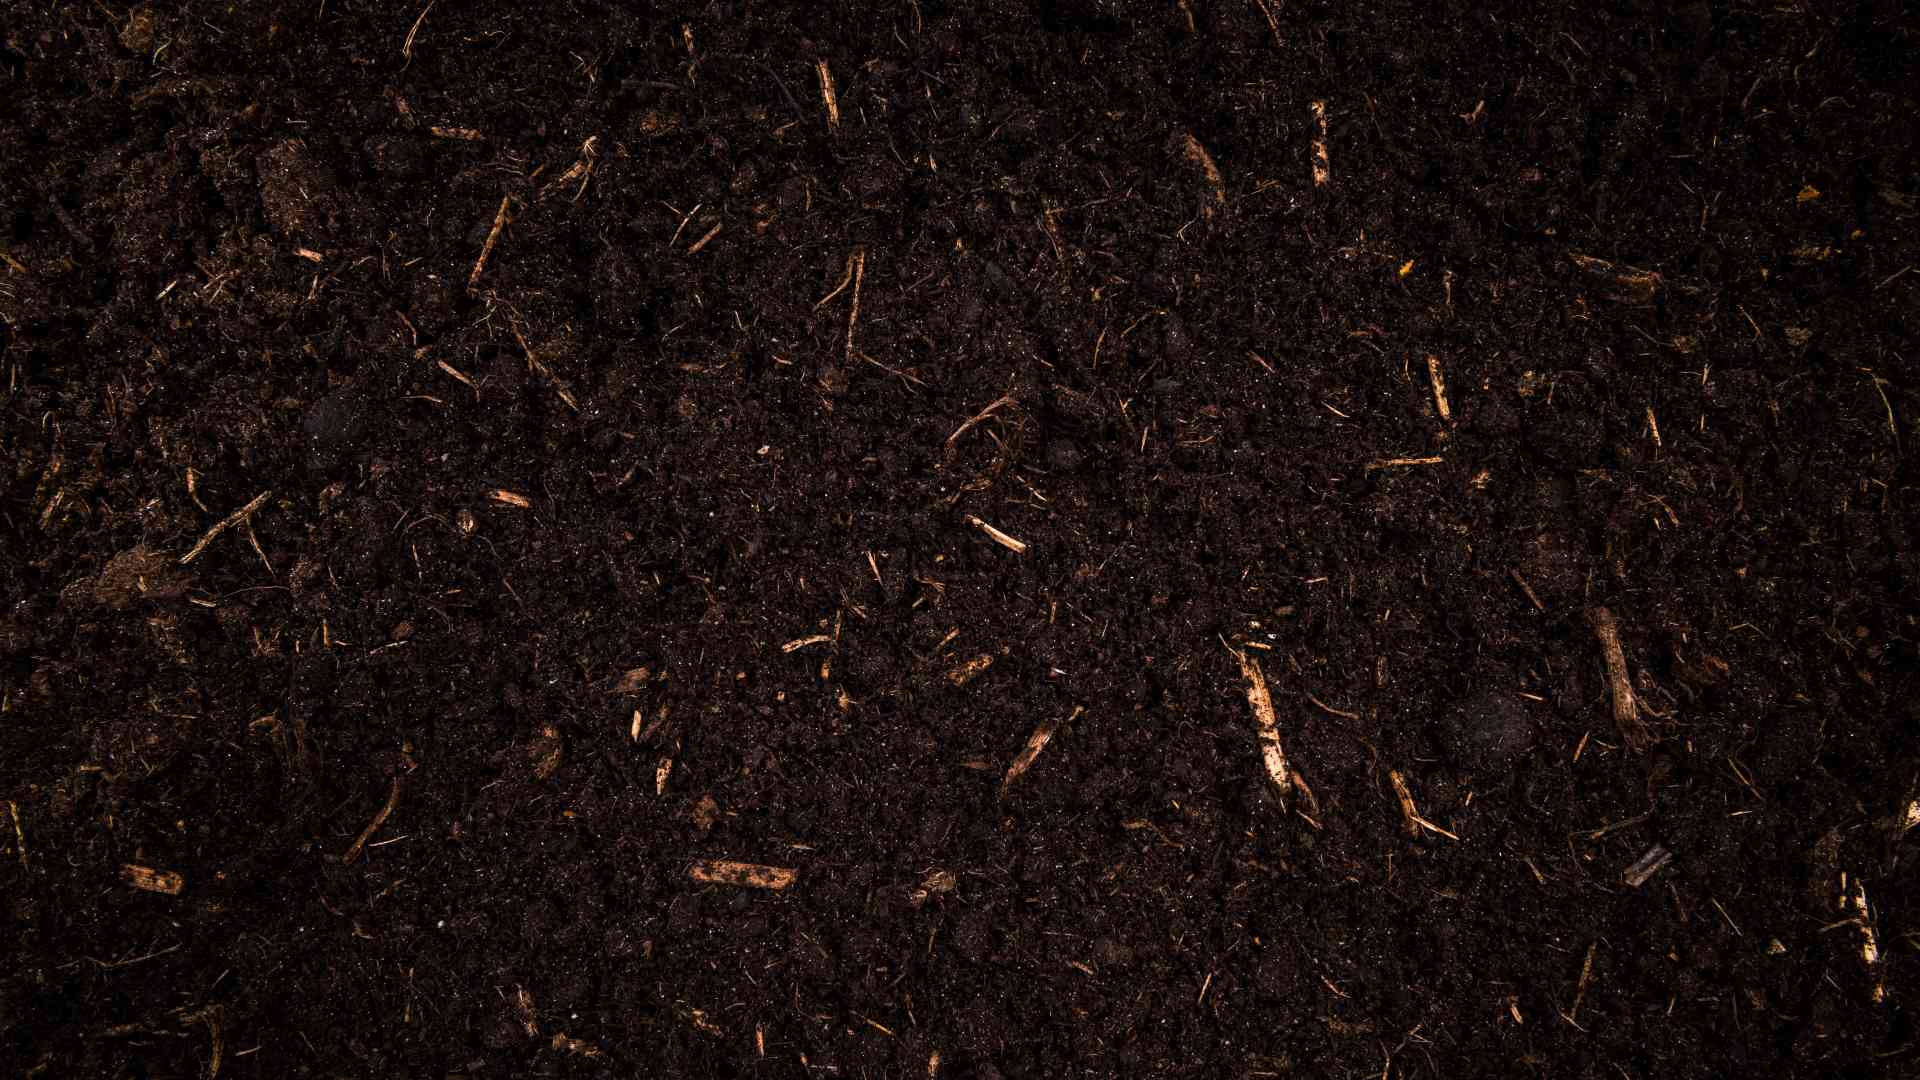 Zdjęcie od góry przedstawiające żyzną glebę.